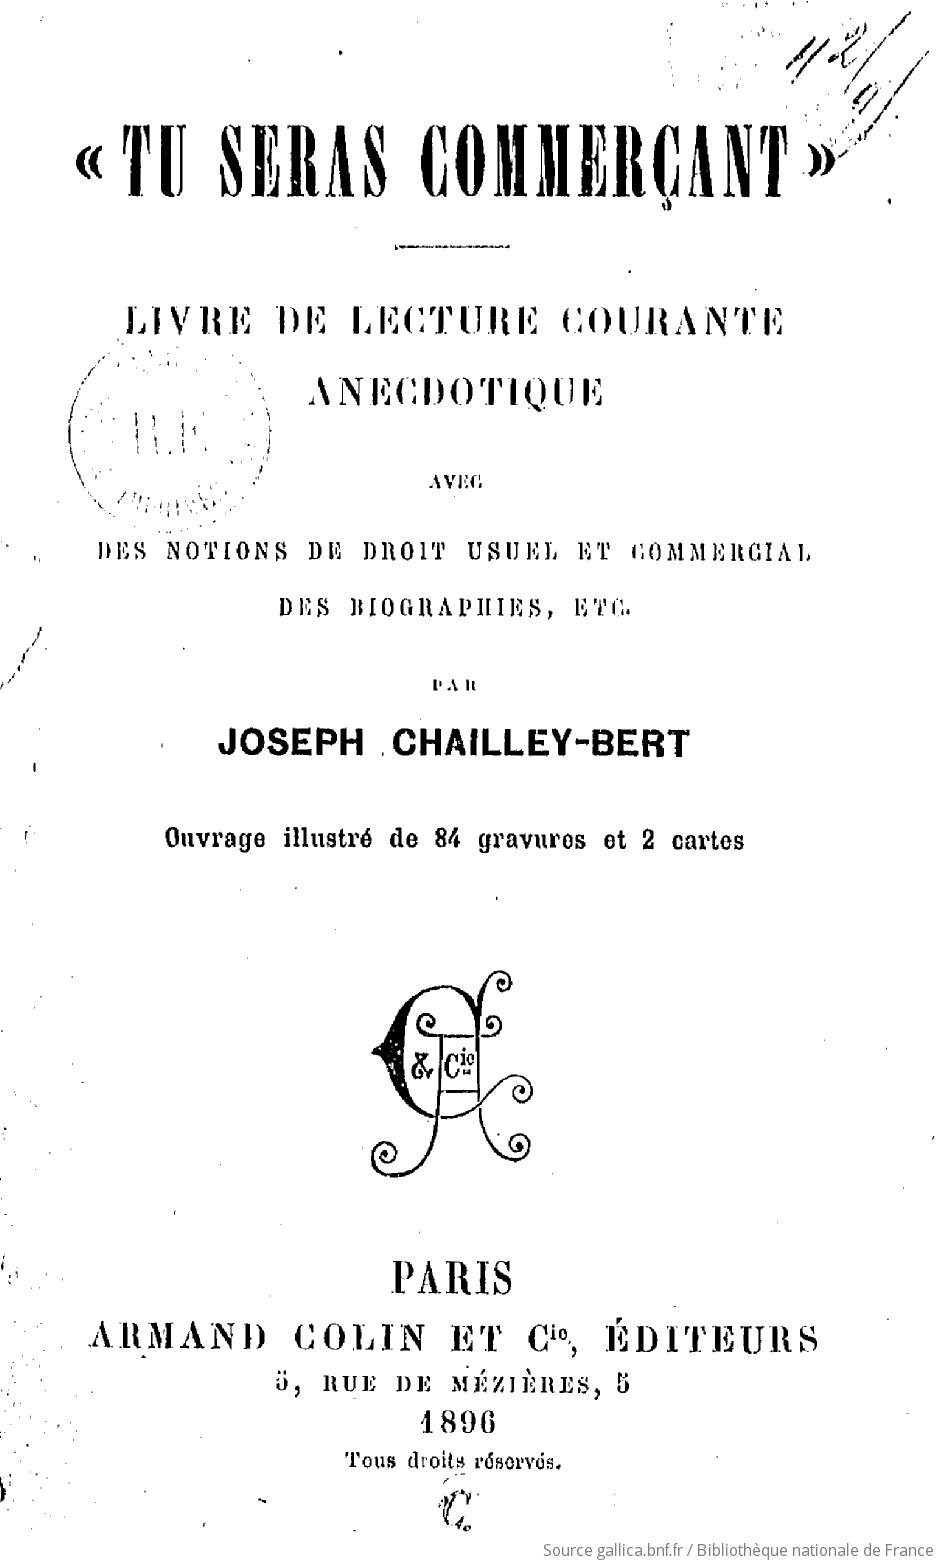 Chailley-Bert, Joseph  (1896). Tu seras commerçant !" : livre de lecture courante anecdotique, avec des notions de droit usuel et commercial, des biographies, etc. 